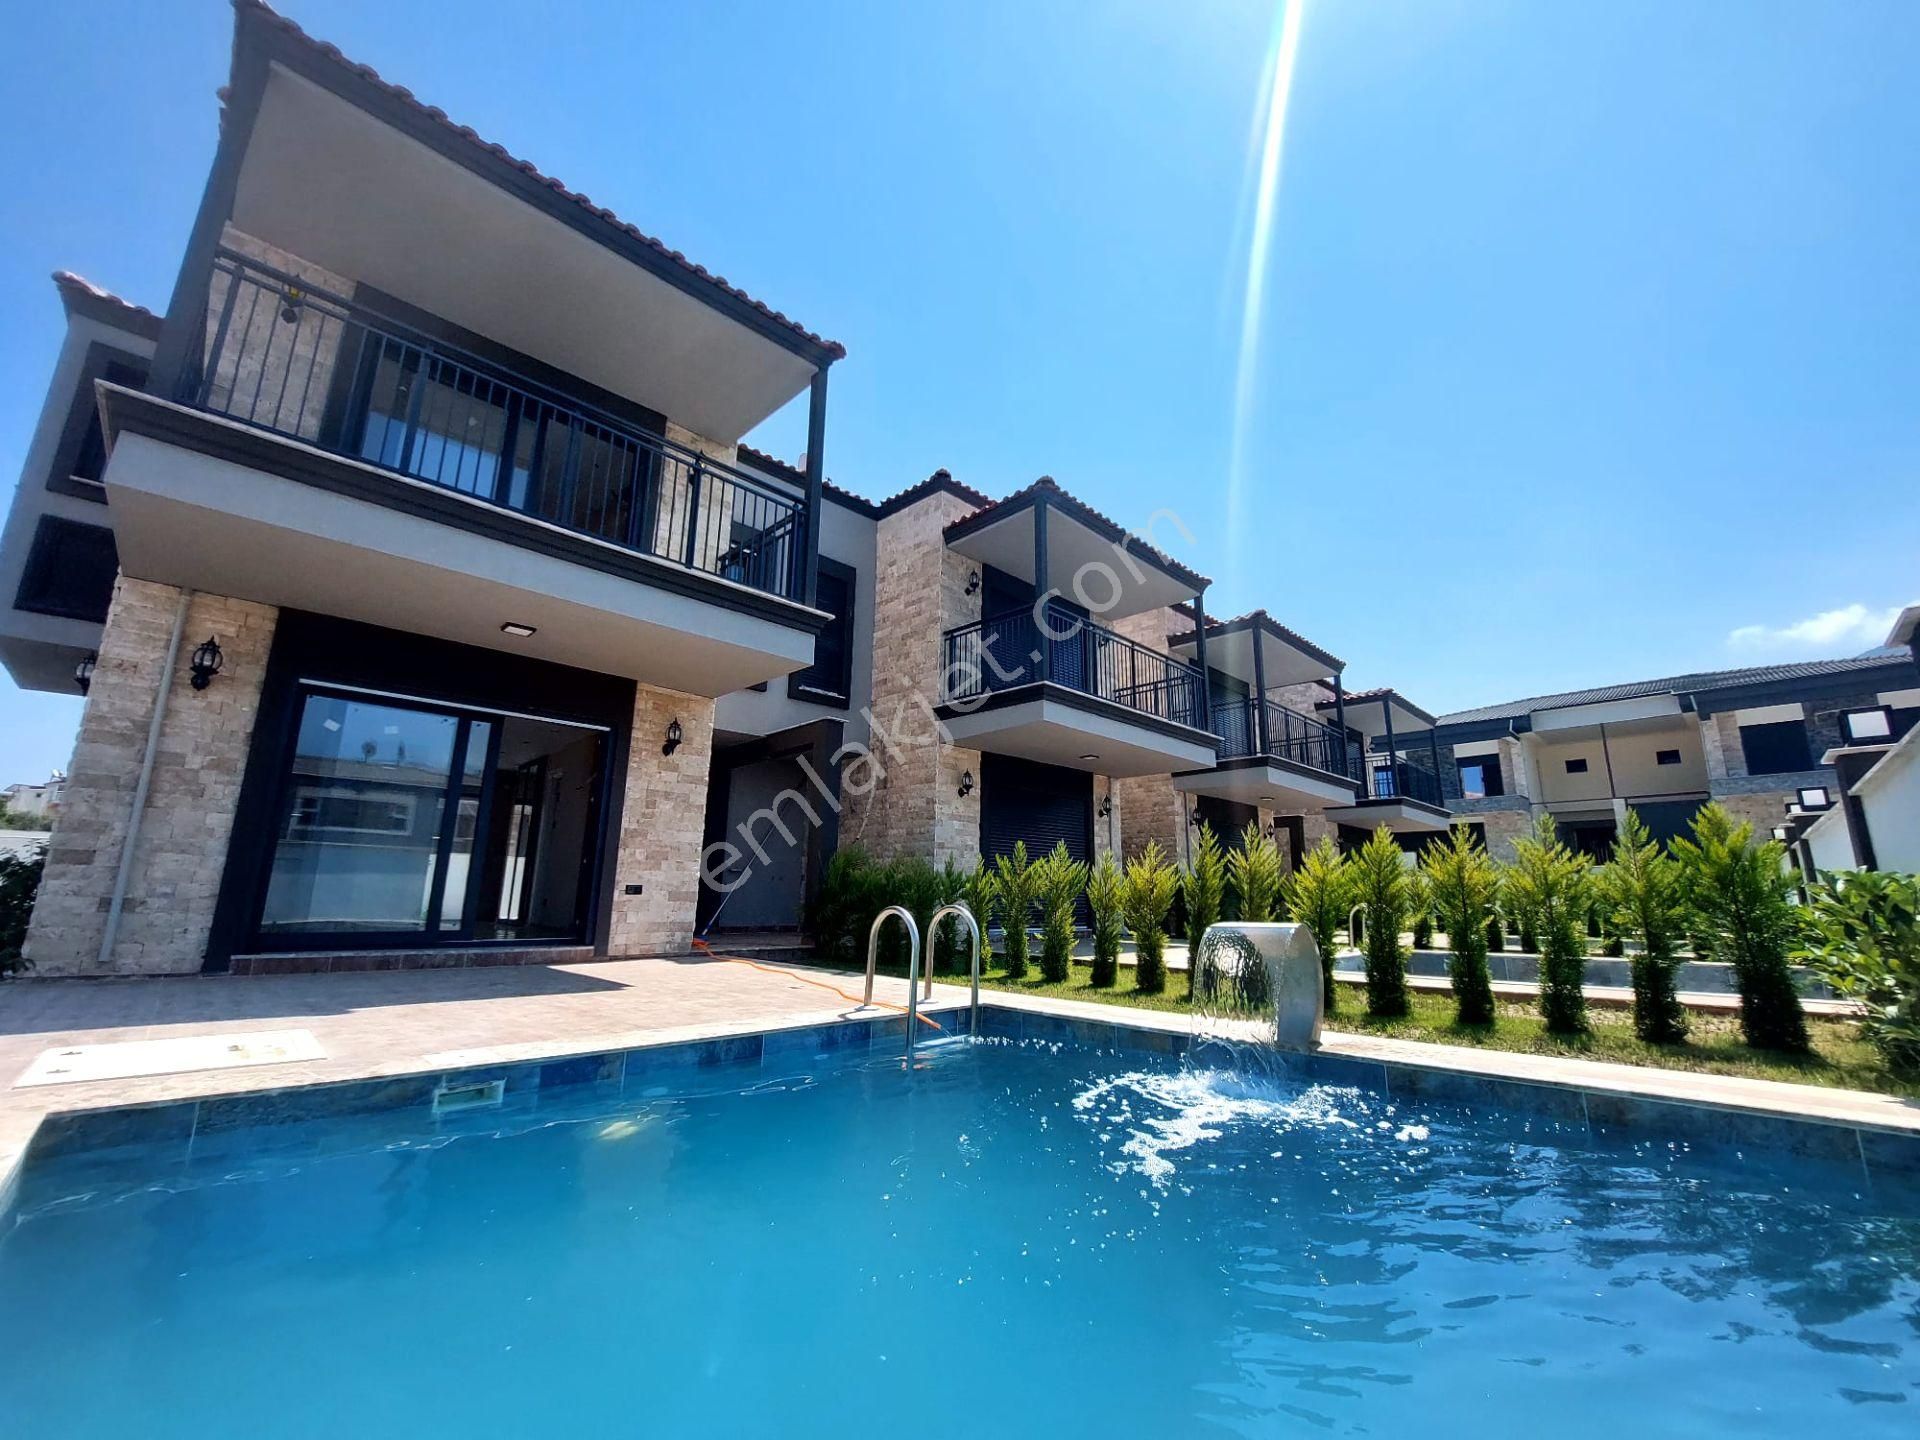 Kuşadası Güzelçamlı Satılık Villa  Kuşadası'nda Denize 5 dk Mesafede Özel Havuzlu Satılık 3+1 Villa